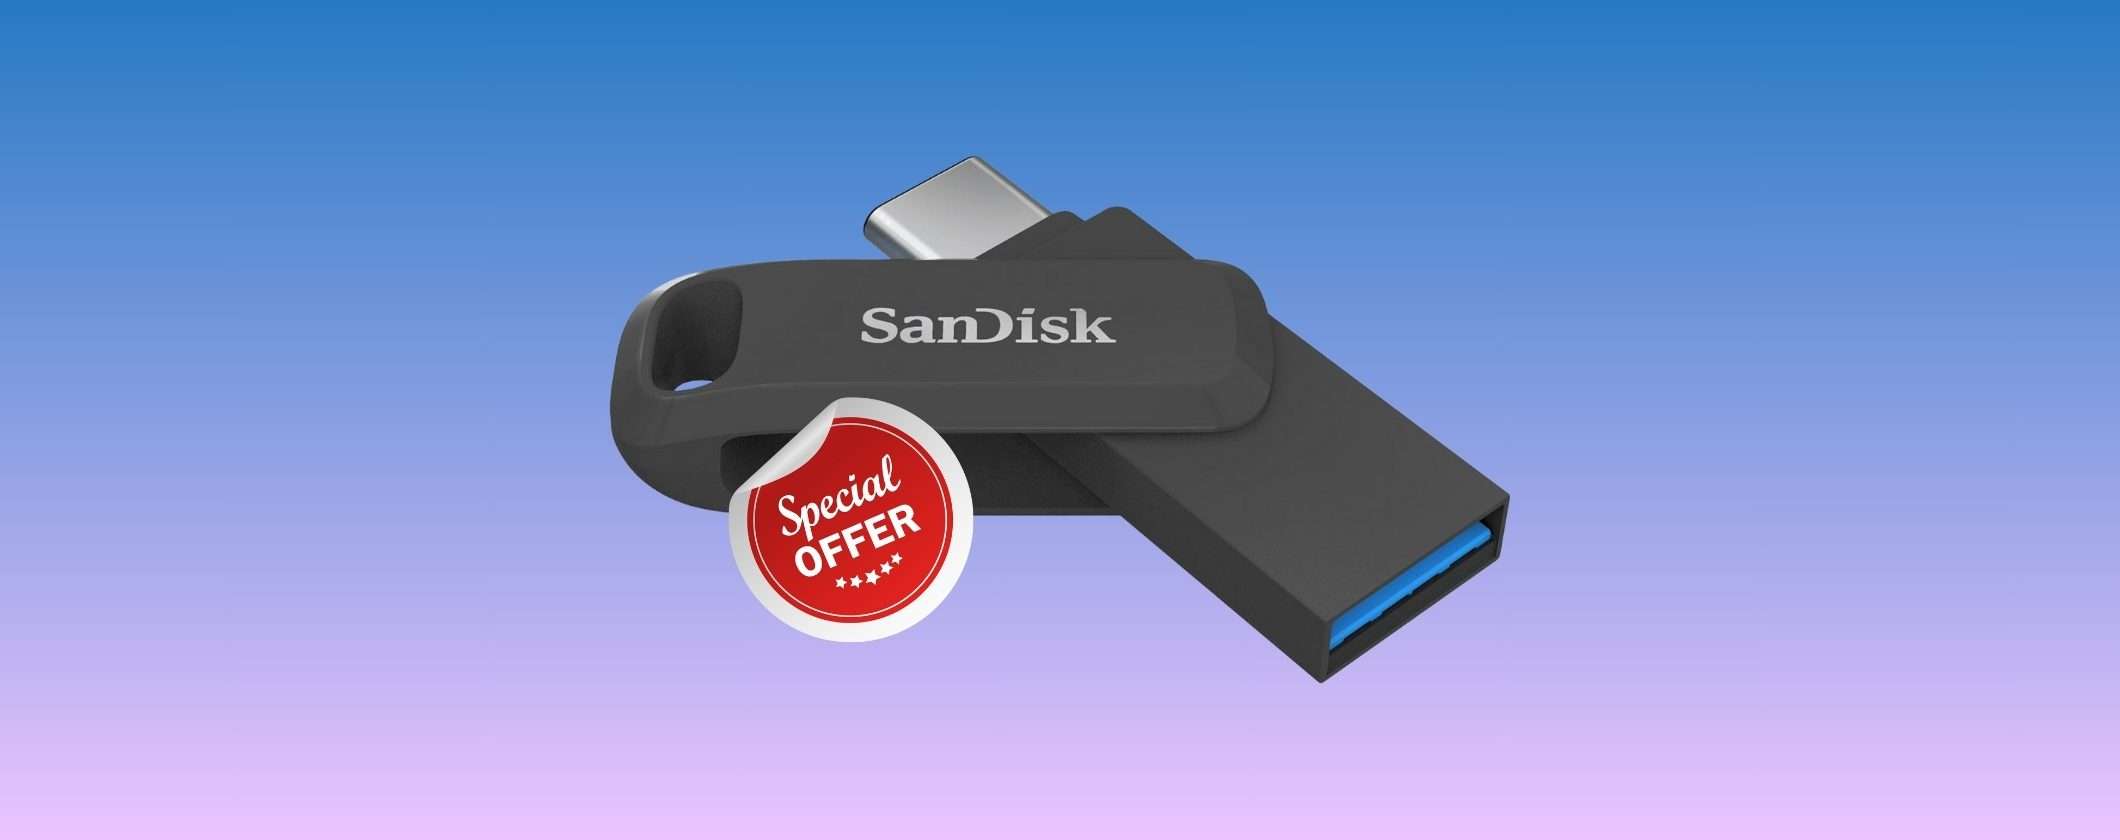 PenDrive SanDisk 512GB 2 in 1: prezzo BOMBA su Amazon